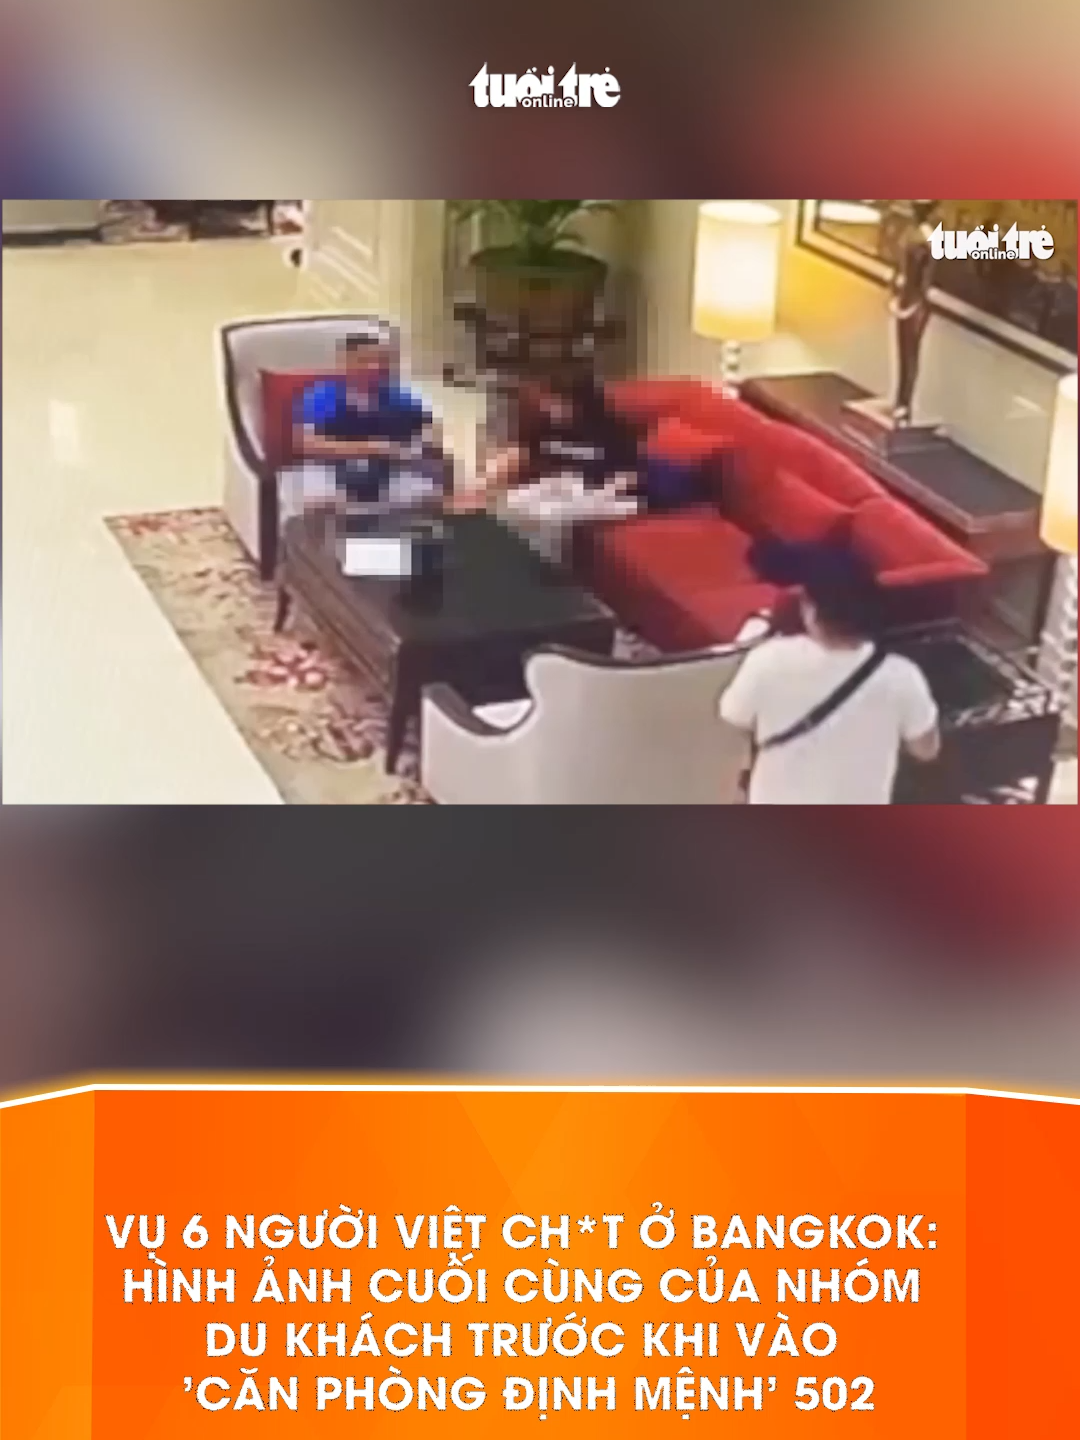 Vụ 6 người Việt ch*t ở Bangkok: Hình ảnh cuối cùng của nhóm du khách trước khi vào 'căn phòng định mệnh' 502 #tiktoknews #baotuoitre #tiktoktuoitre #thailan